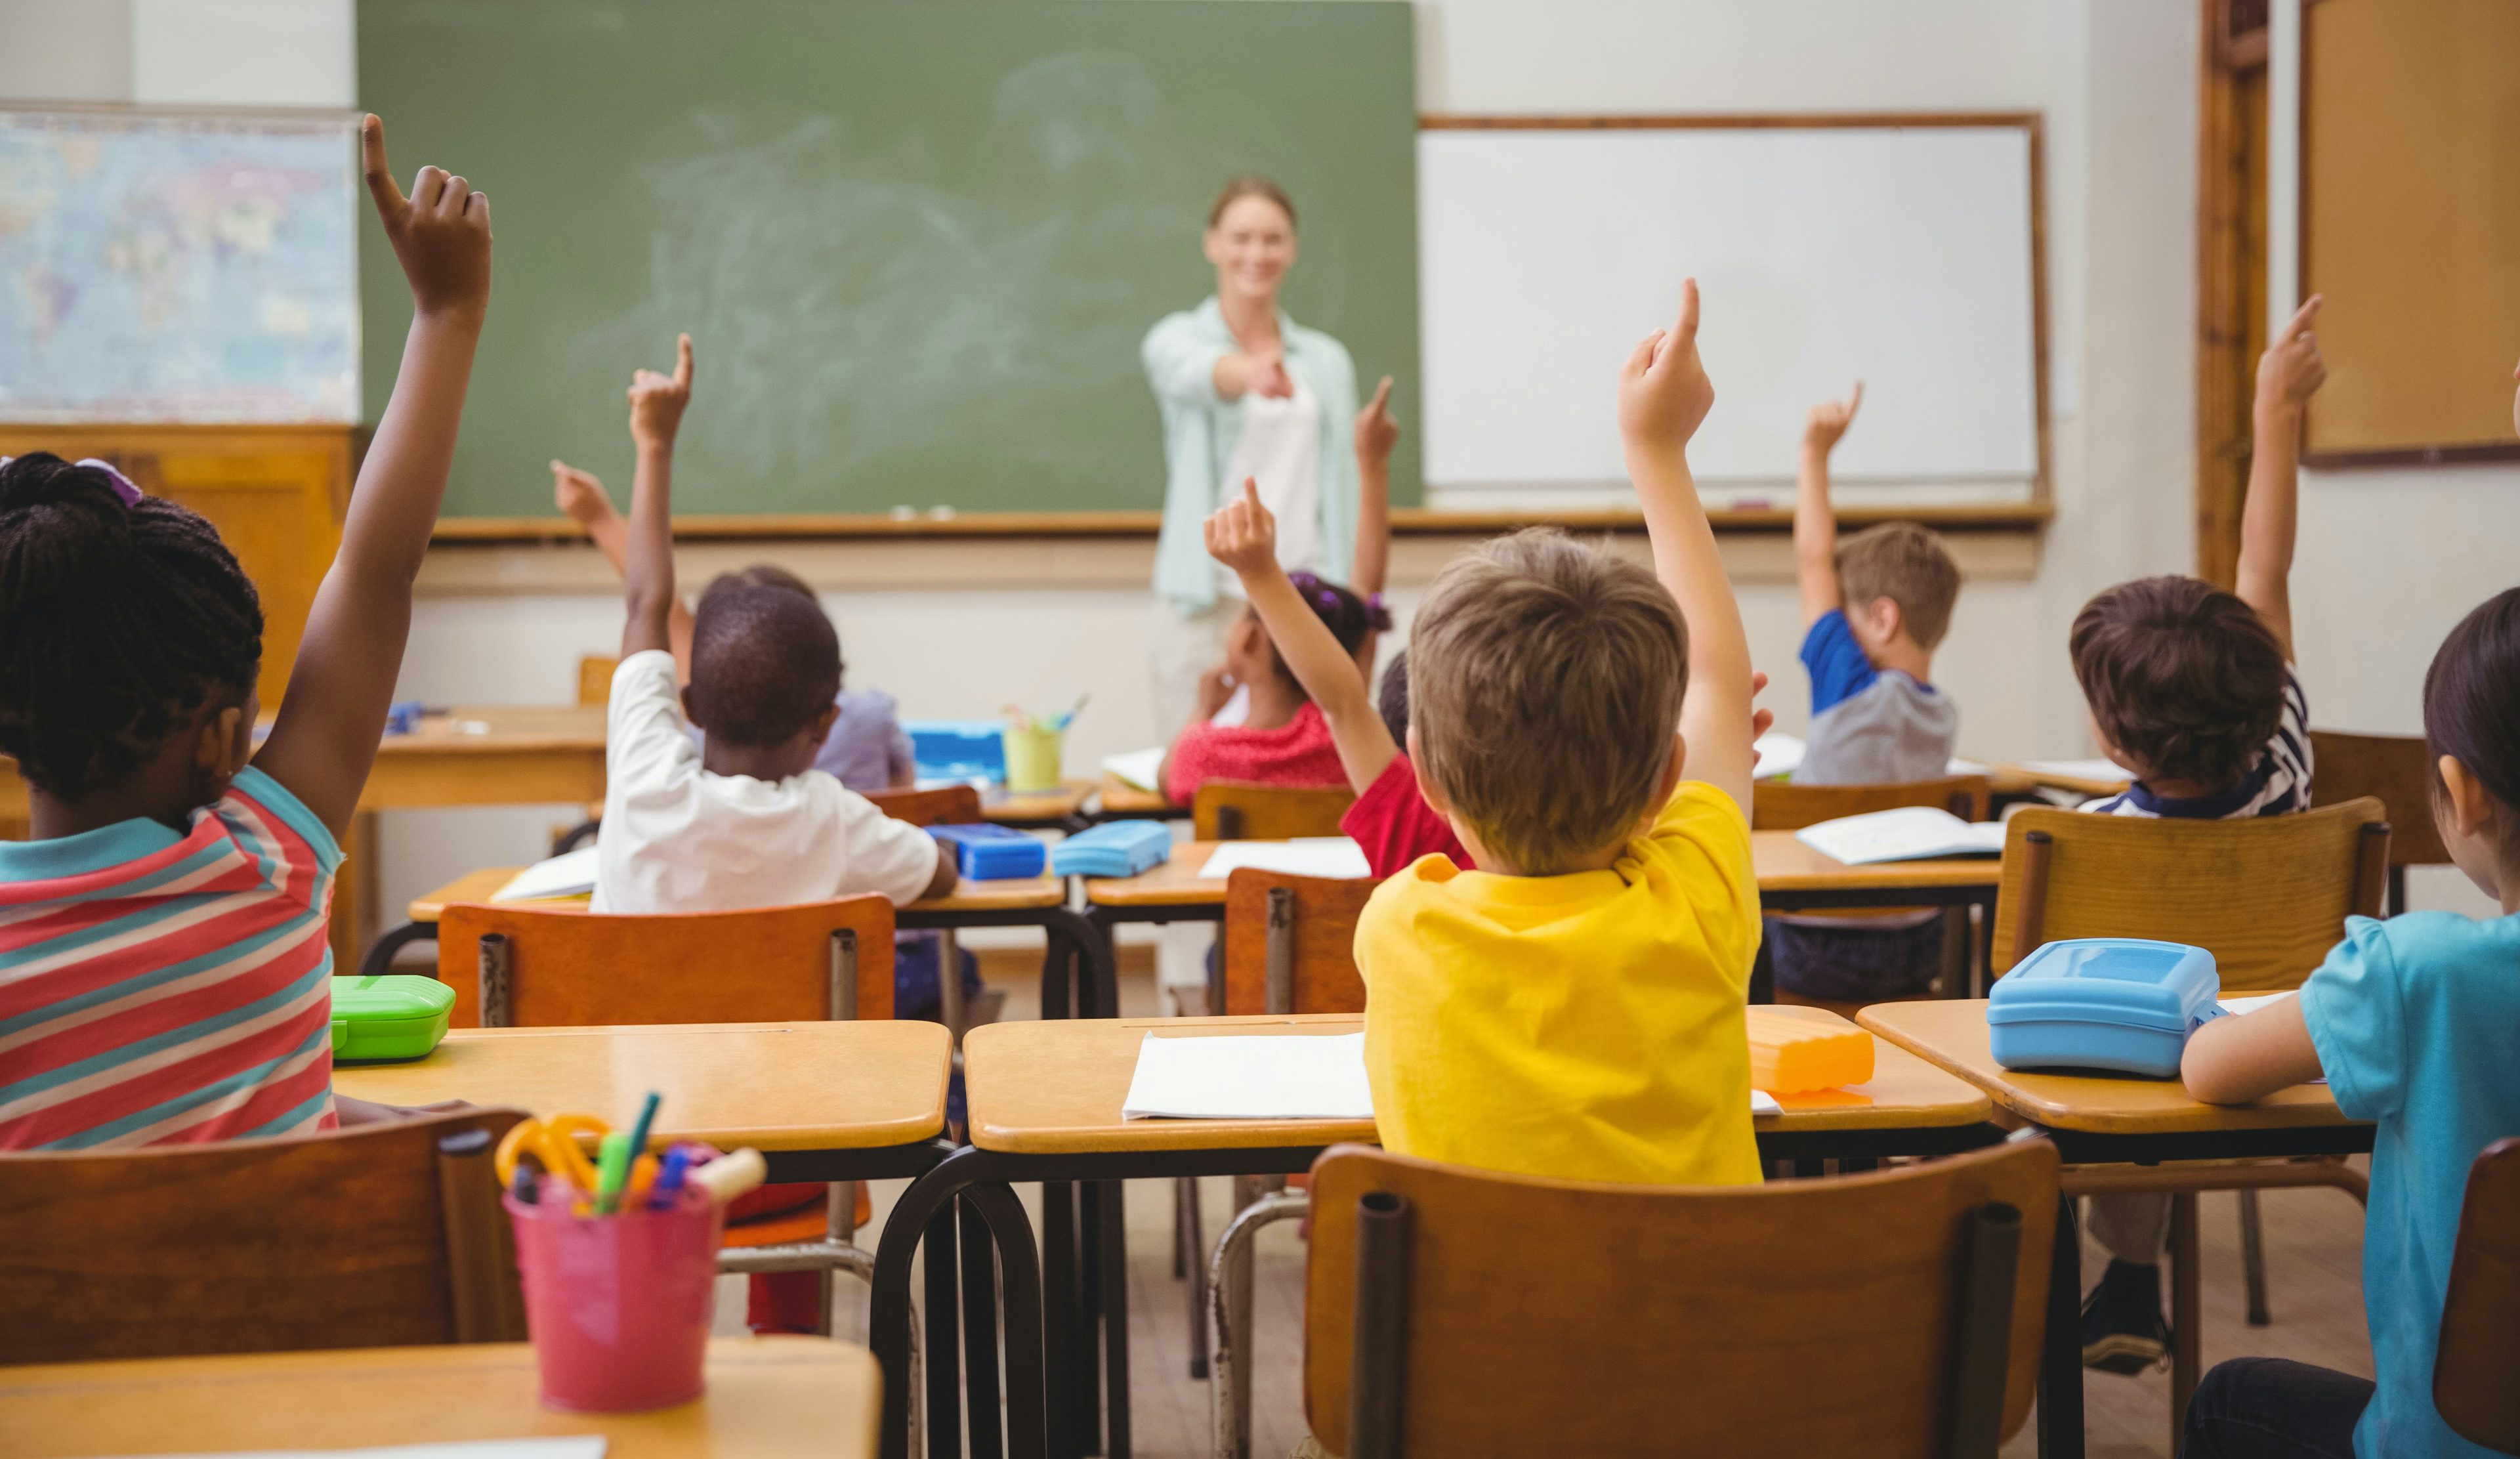 Children at their school desks raising their hands